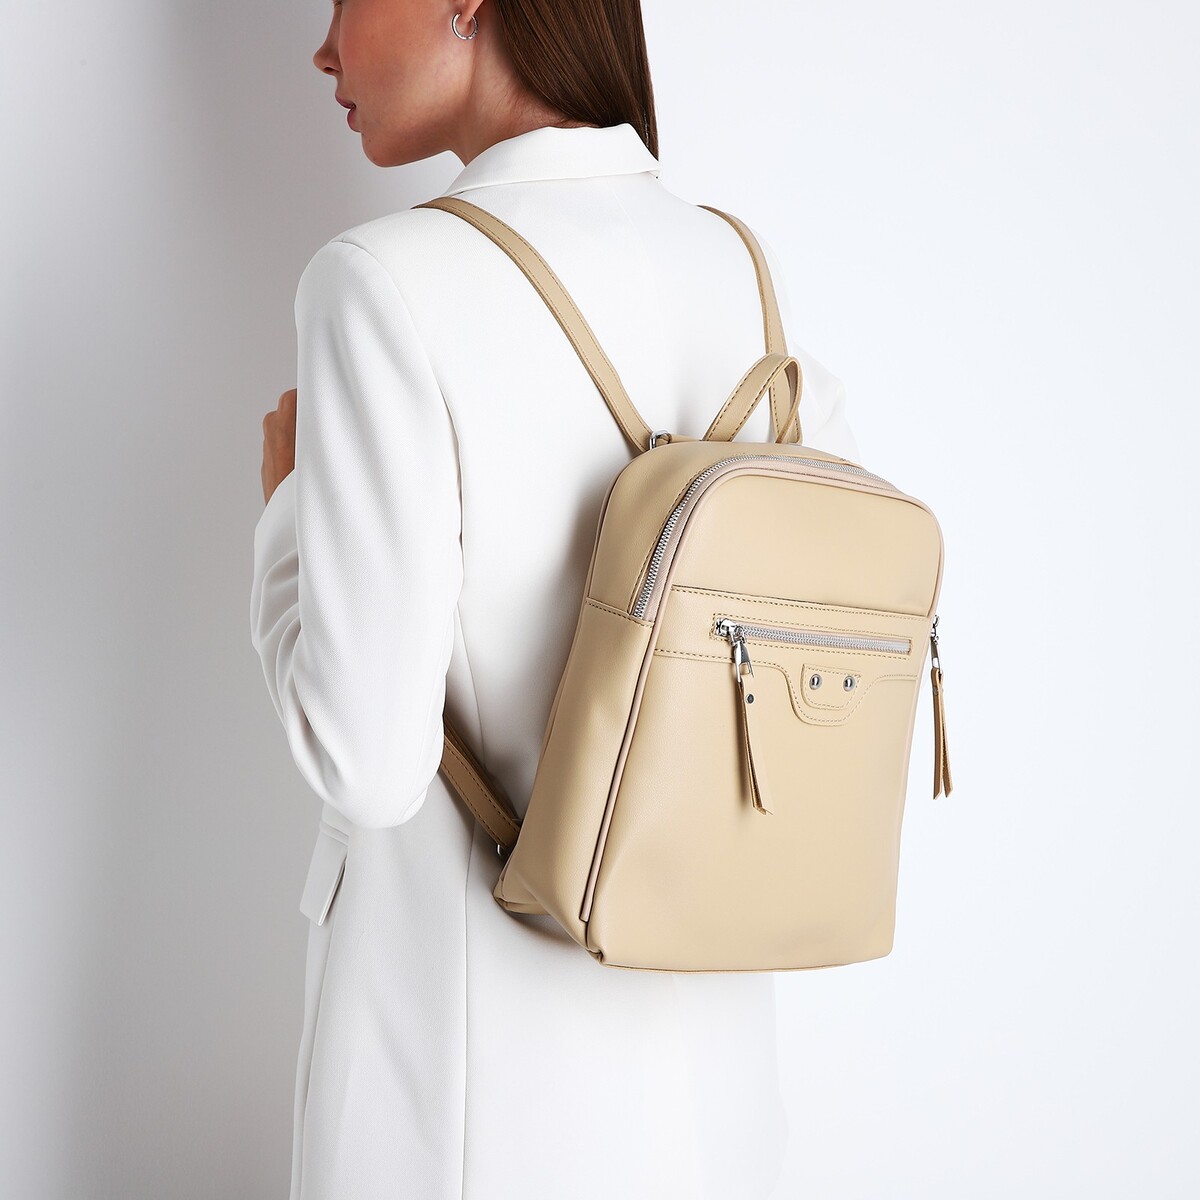 Рюкзак женский из искусственной кожи на молнии, 3 кармана, цвет бежевый рюкзак молодежный из текстиля на молнии 4 кармана бежевый